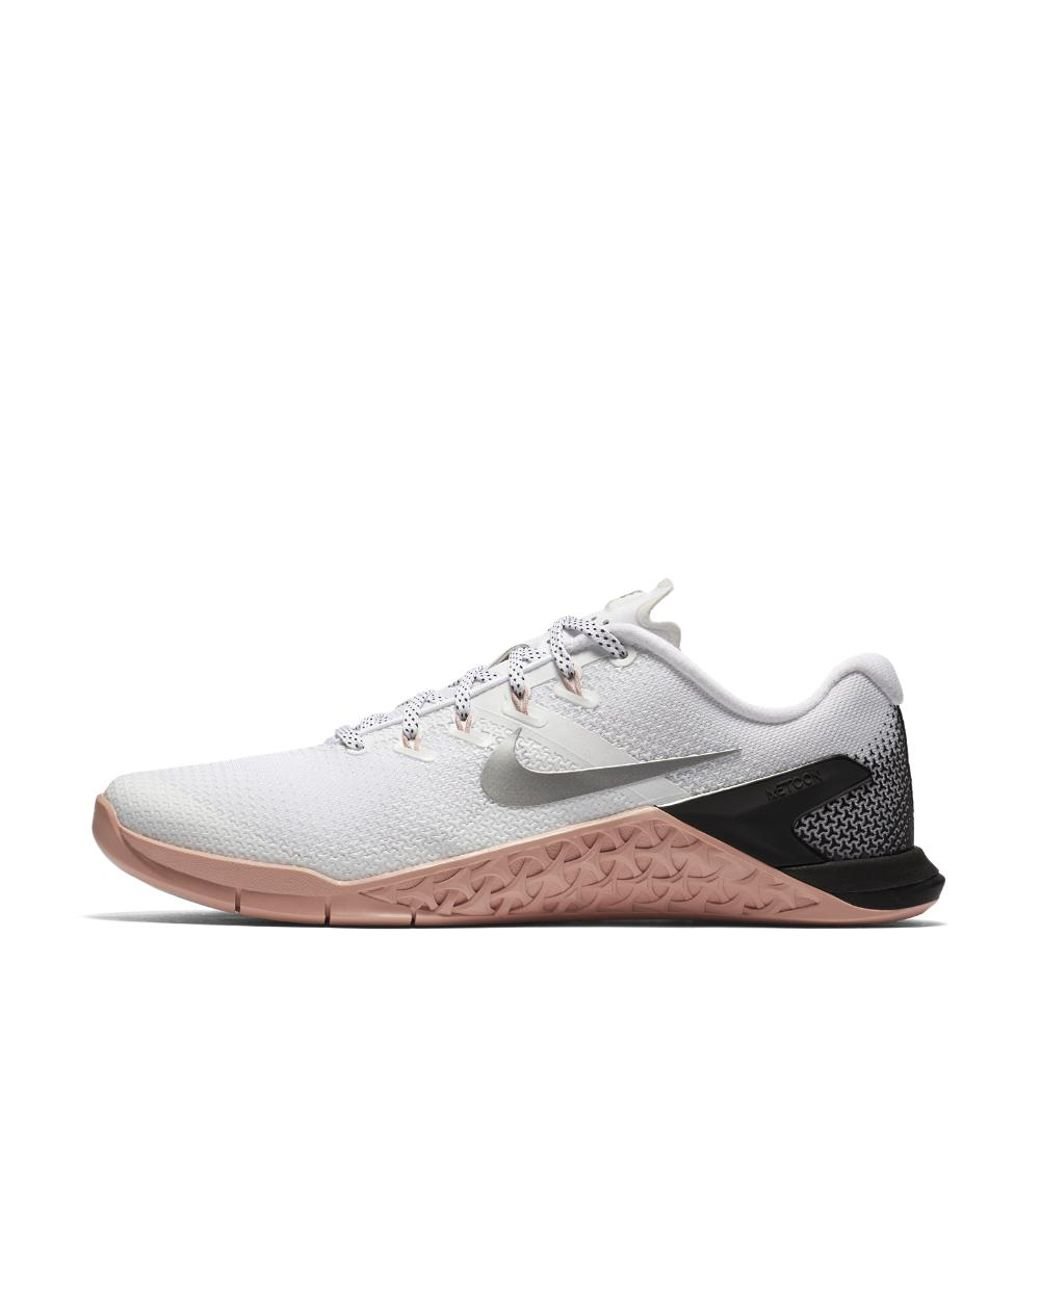 Nike Metcon 4 Women's Training Shoe in White | Lyst